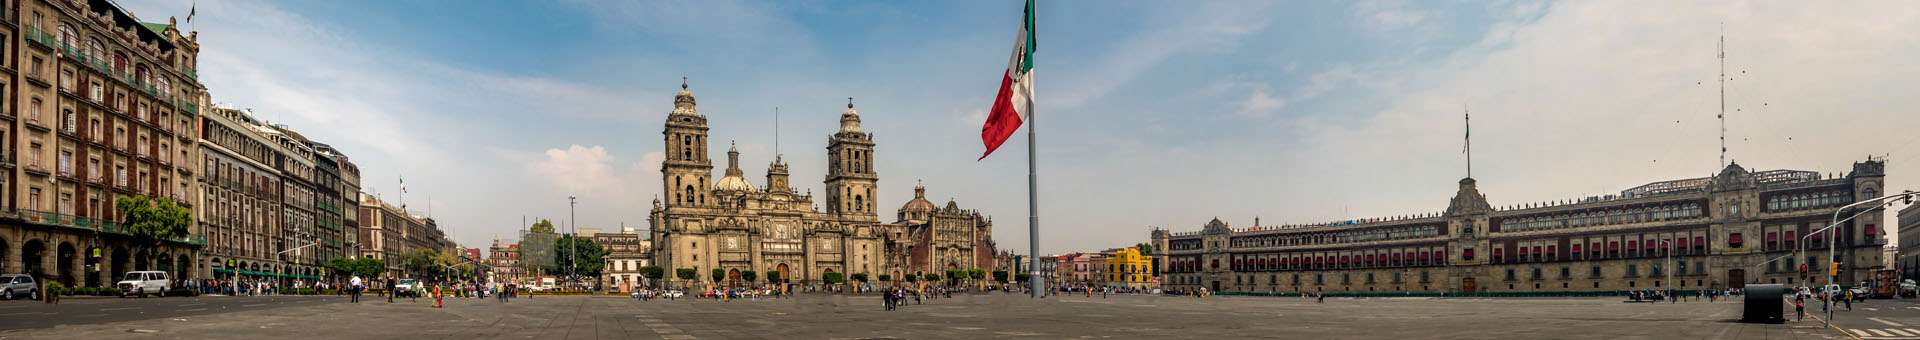 Búsqueda de información Whois de nombres de dominios en México